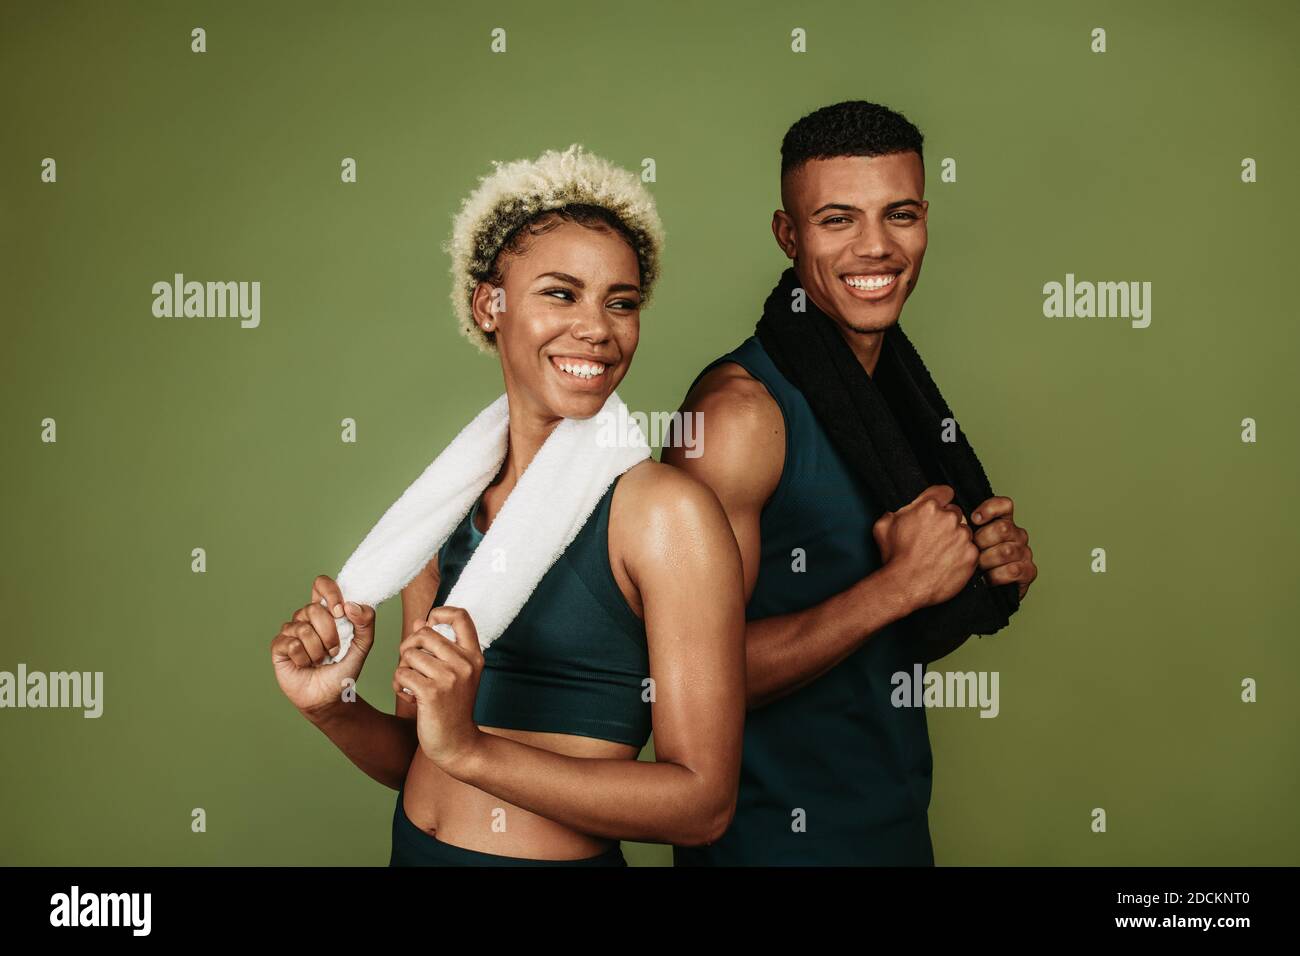 Lächelndes afroamerikanisches Fitnesspaar, das sich nach dem Workout entspannt. Fitness-Mann und -Frau stehen zusammen und halten Handtücher auf grünem Hintergrund. Stockfoto